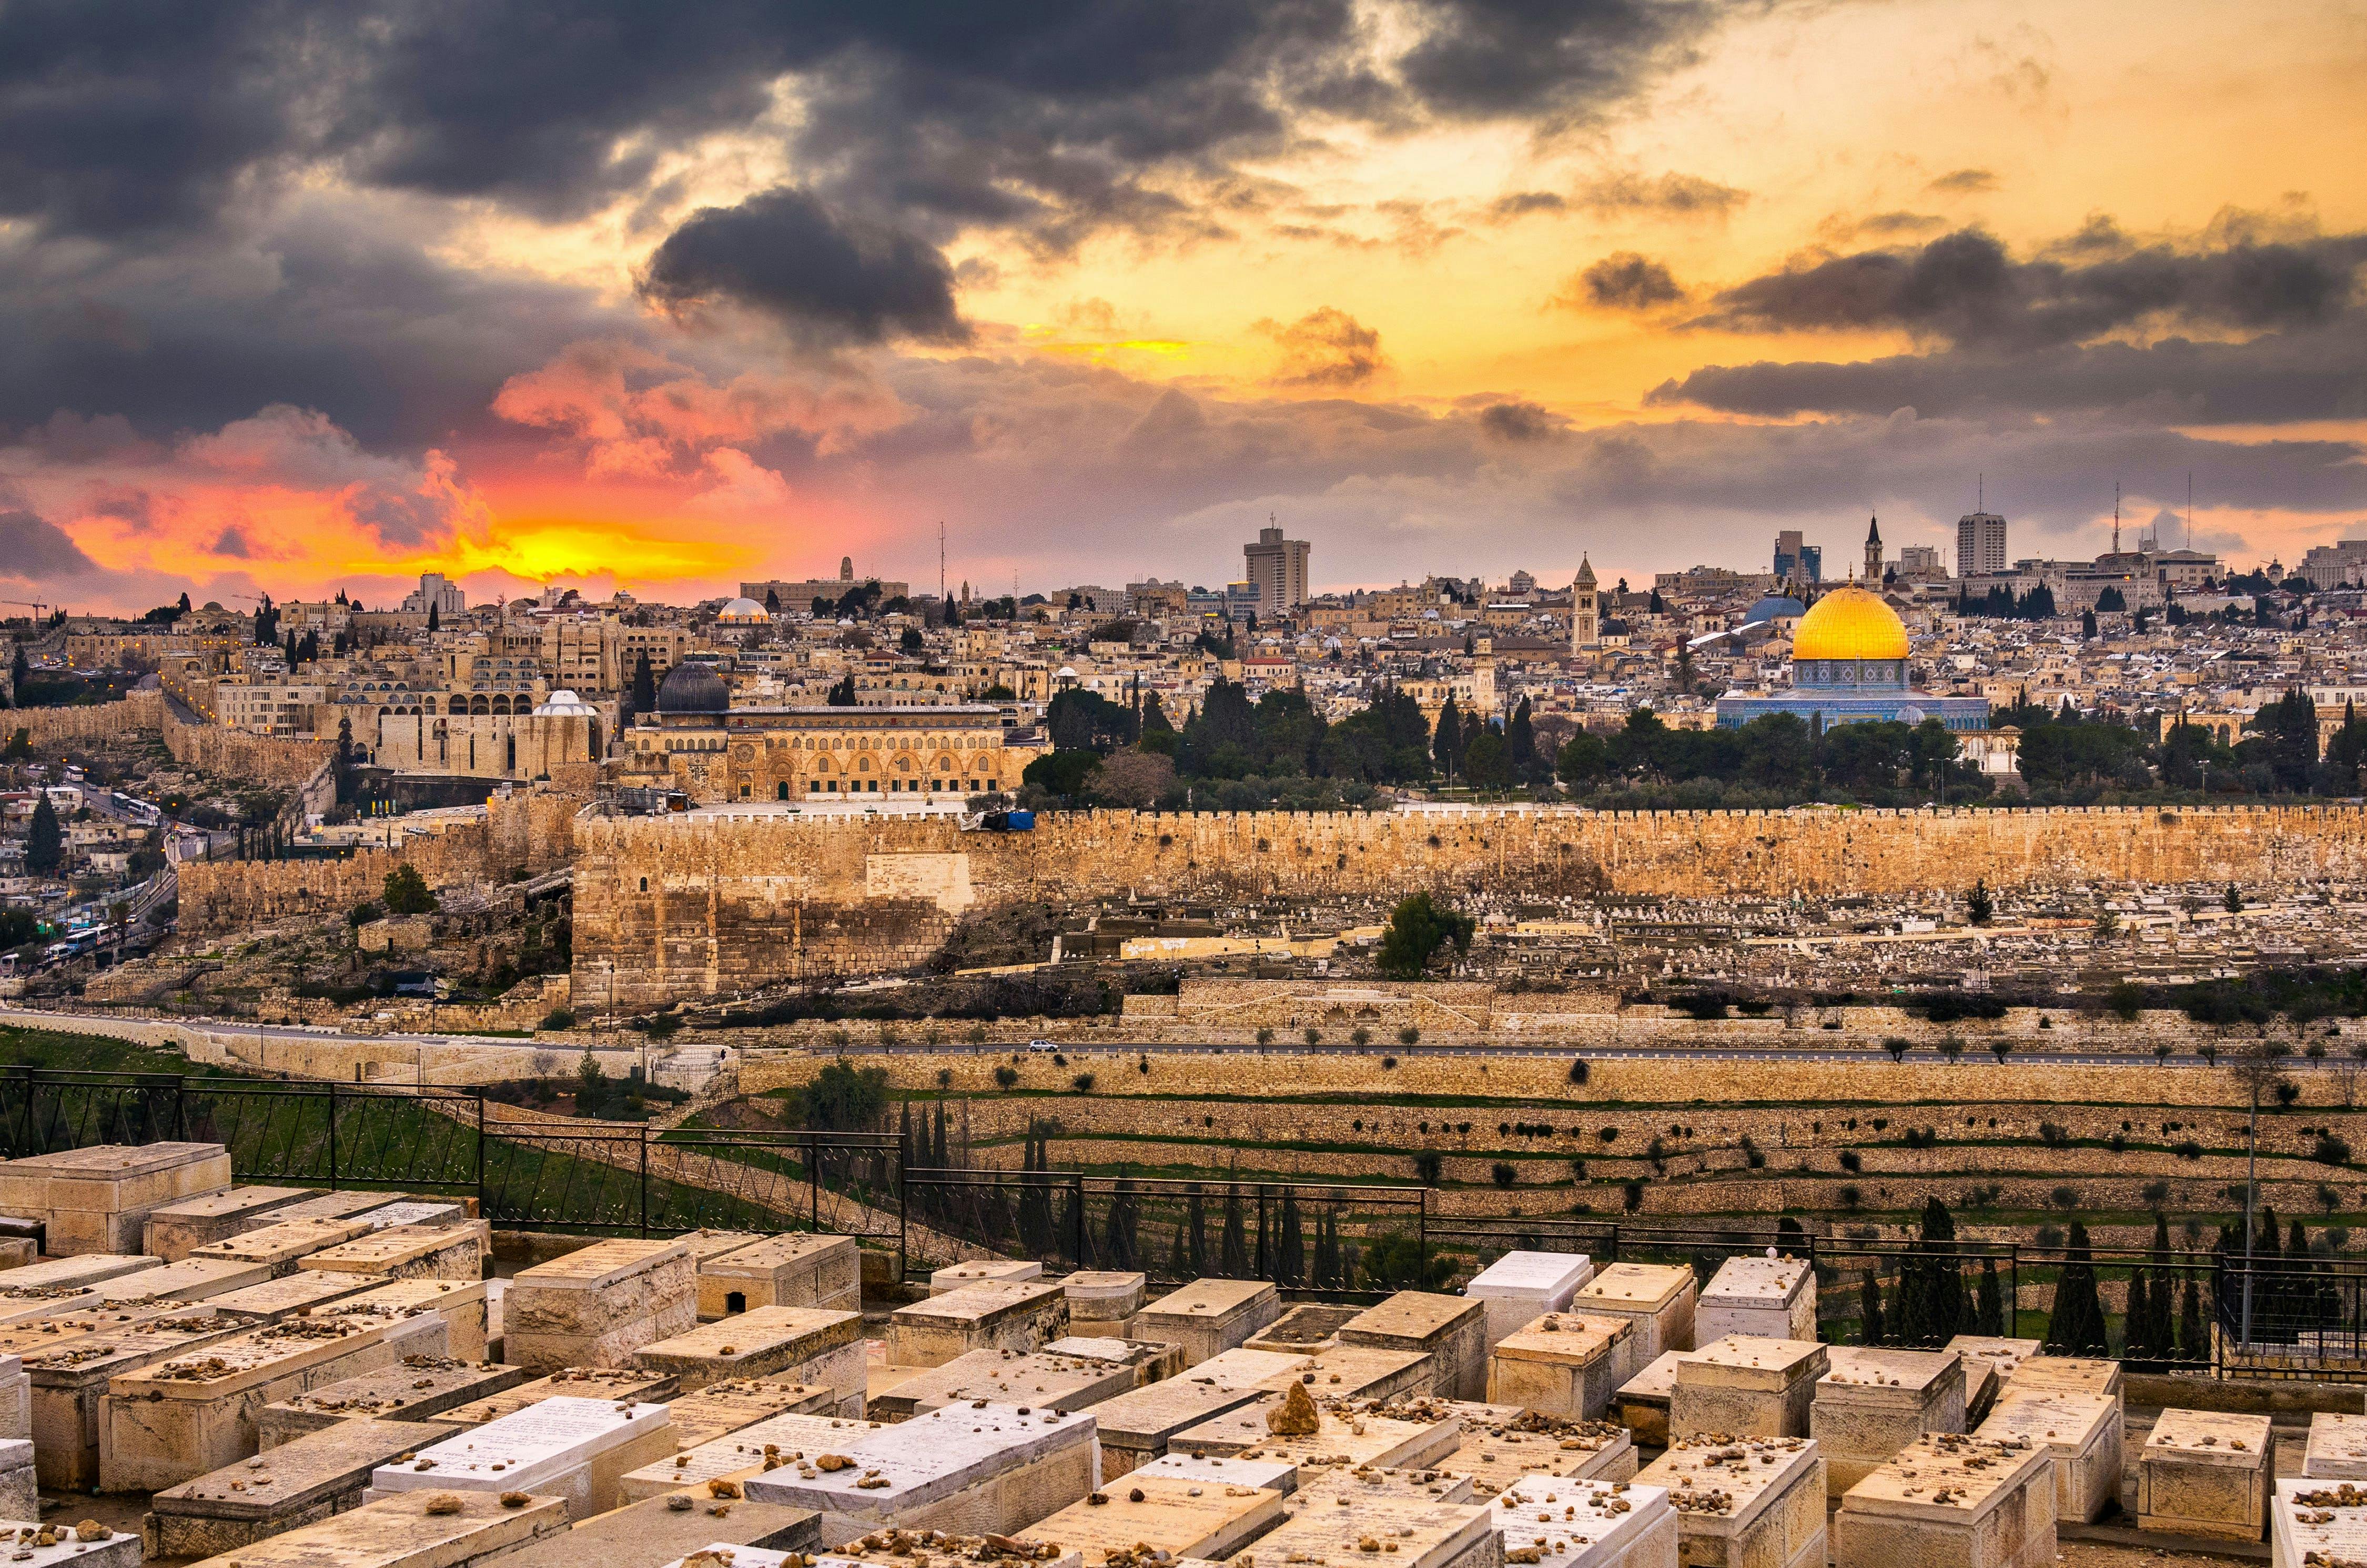 Ganztägige geführte Tour durch Jerusalem ab Herzliya